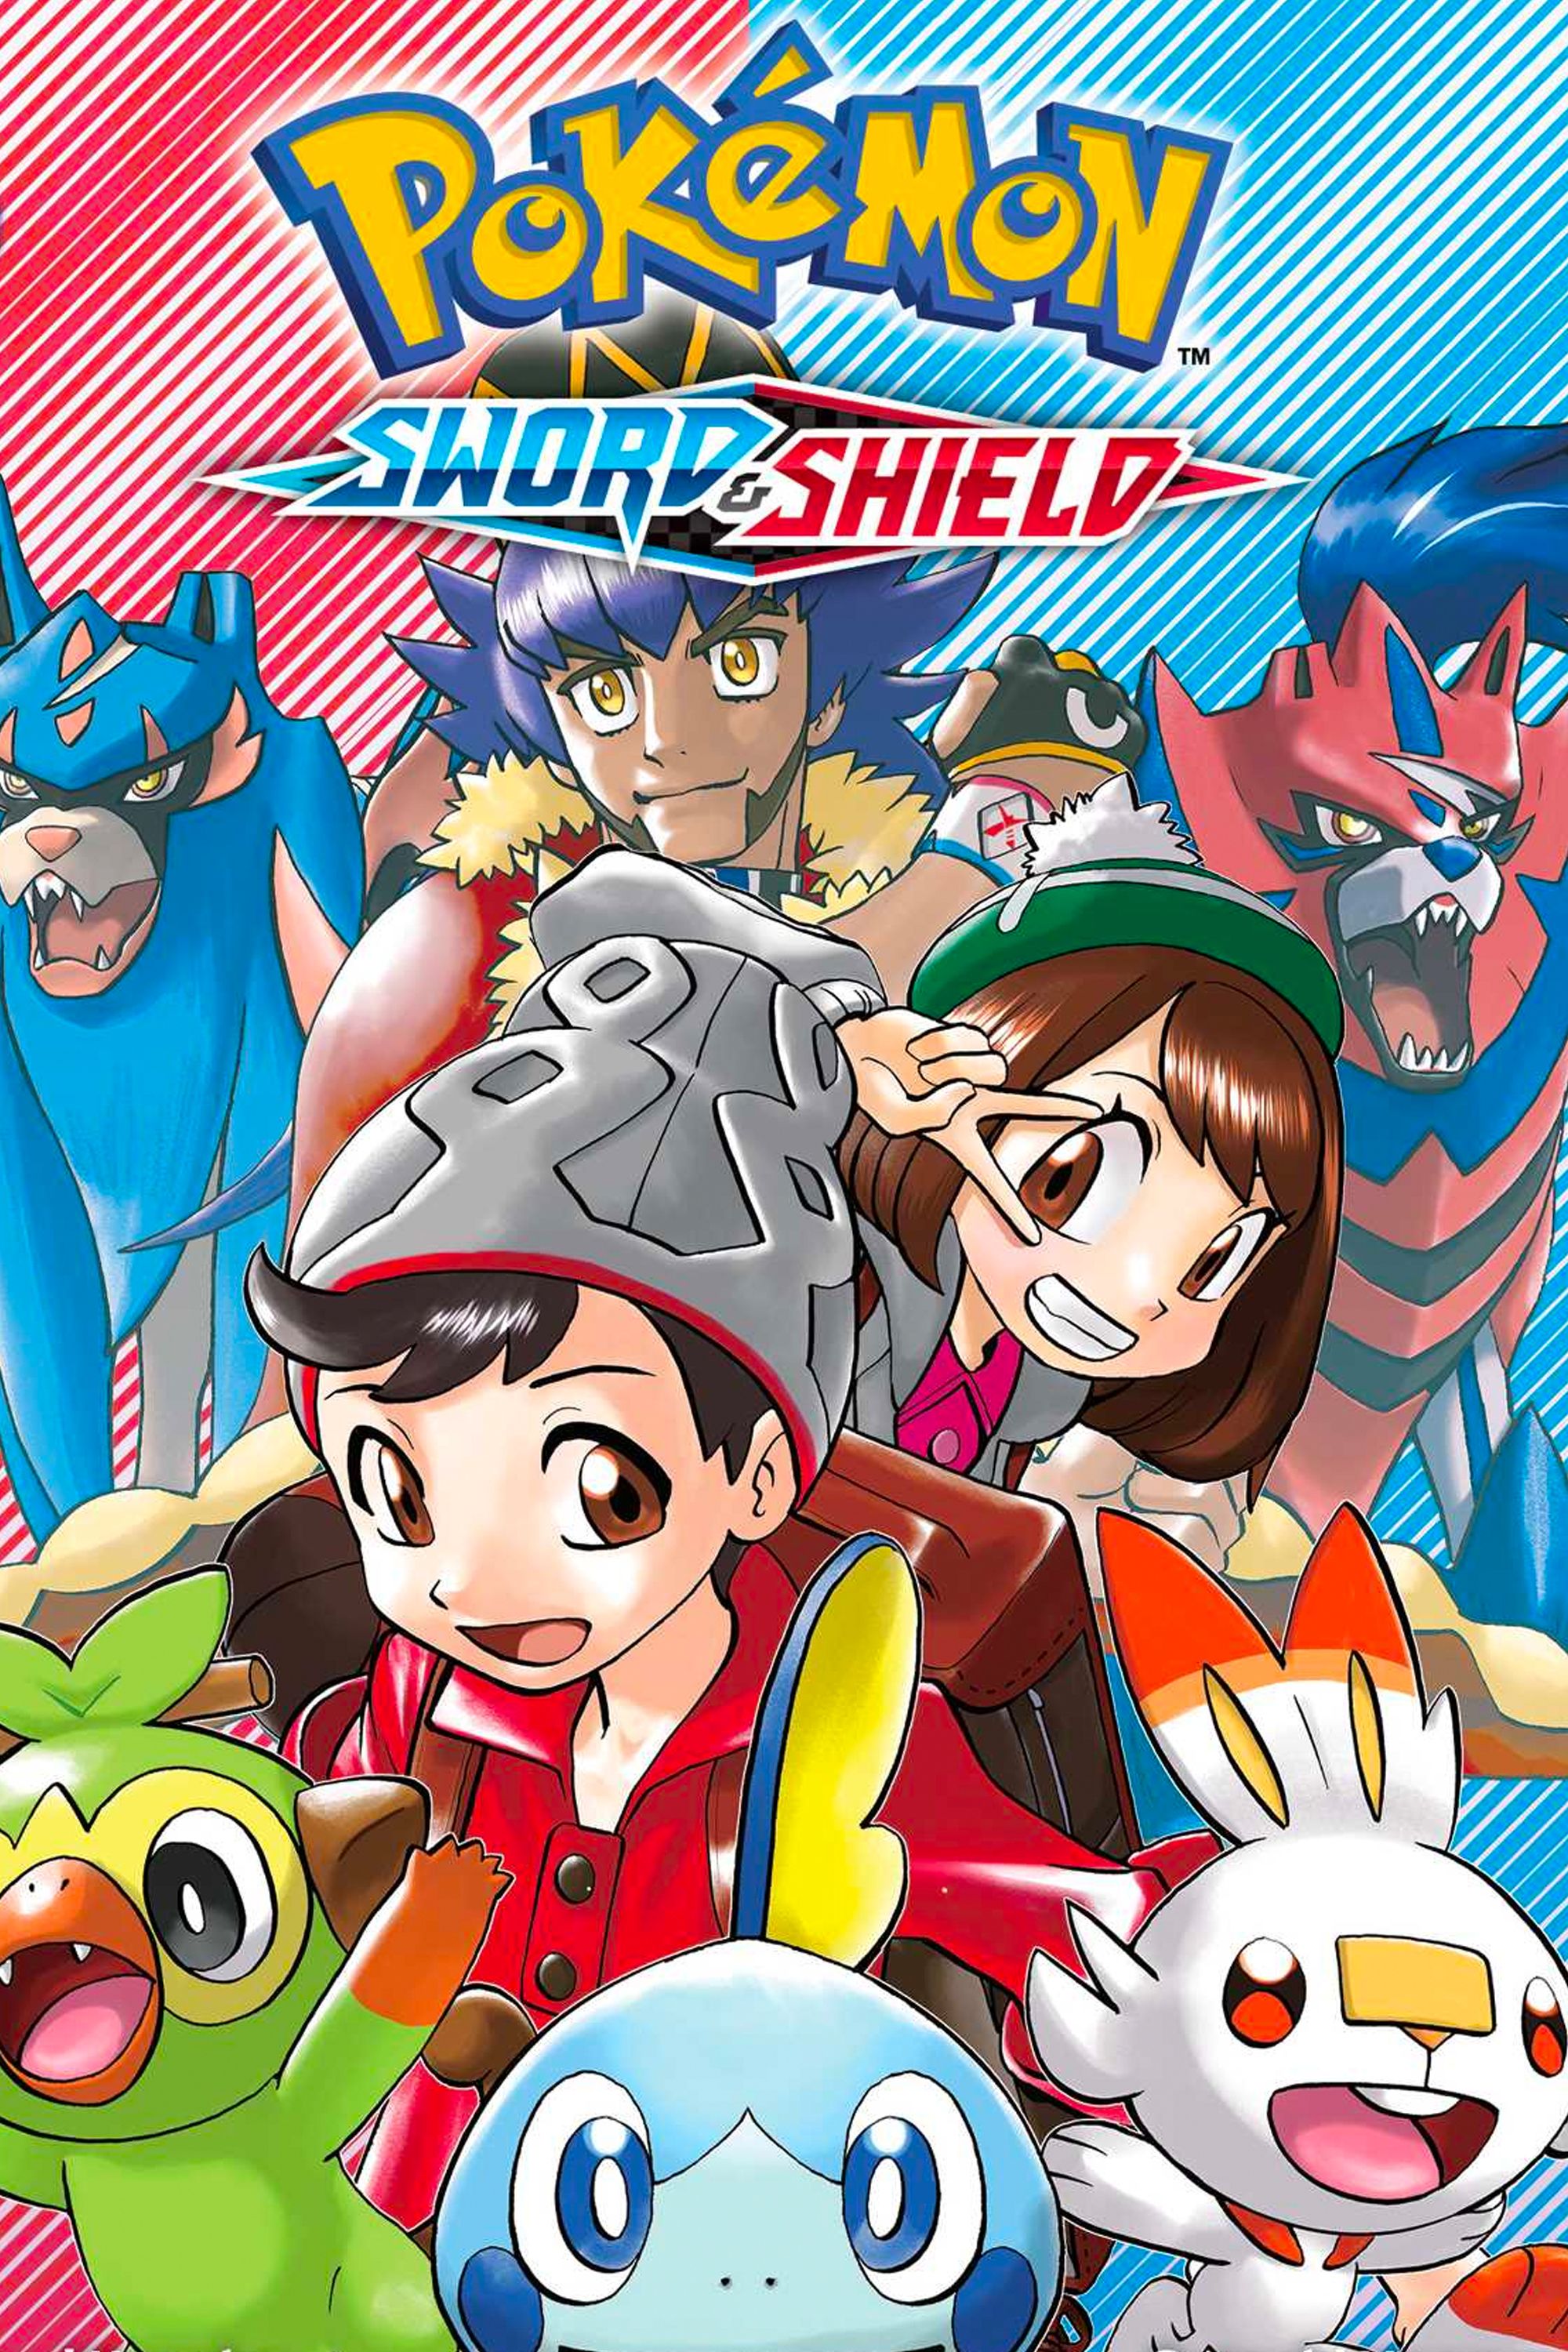 Pokémon Sword & Shield - Isle of Armor Cameos